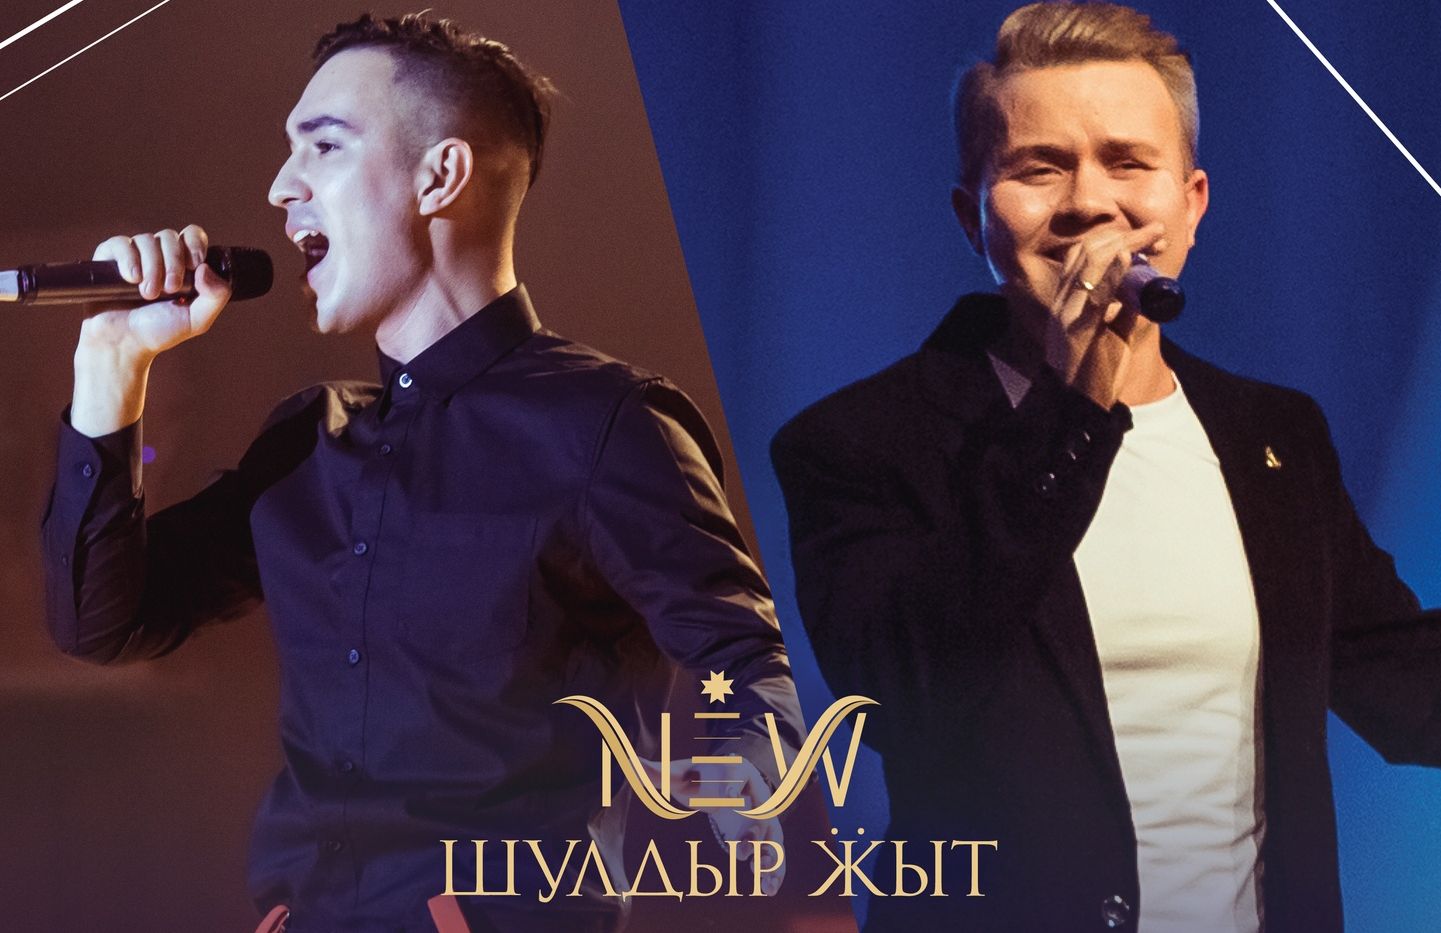 Билеты на концерт ансамбля «Шулдыр ӝыт» разыграют в эфире Love Radio в Ижевске